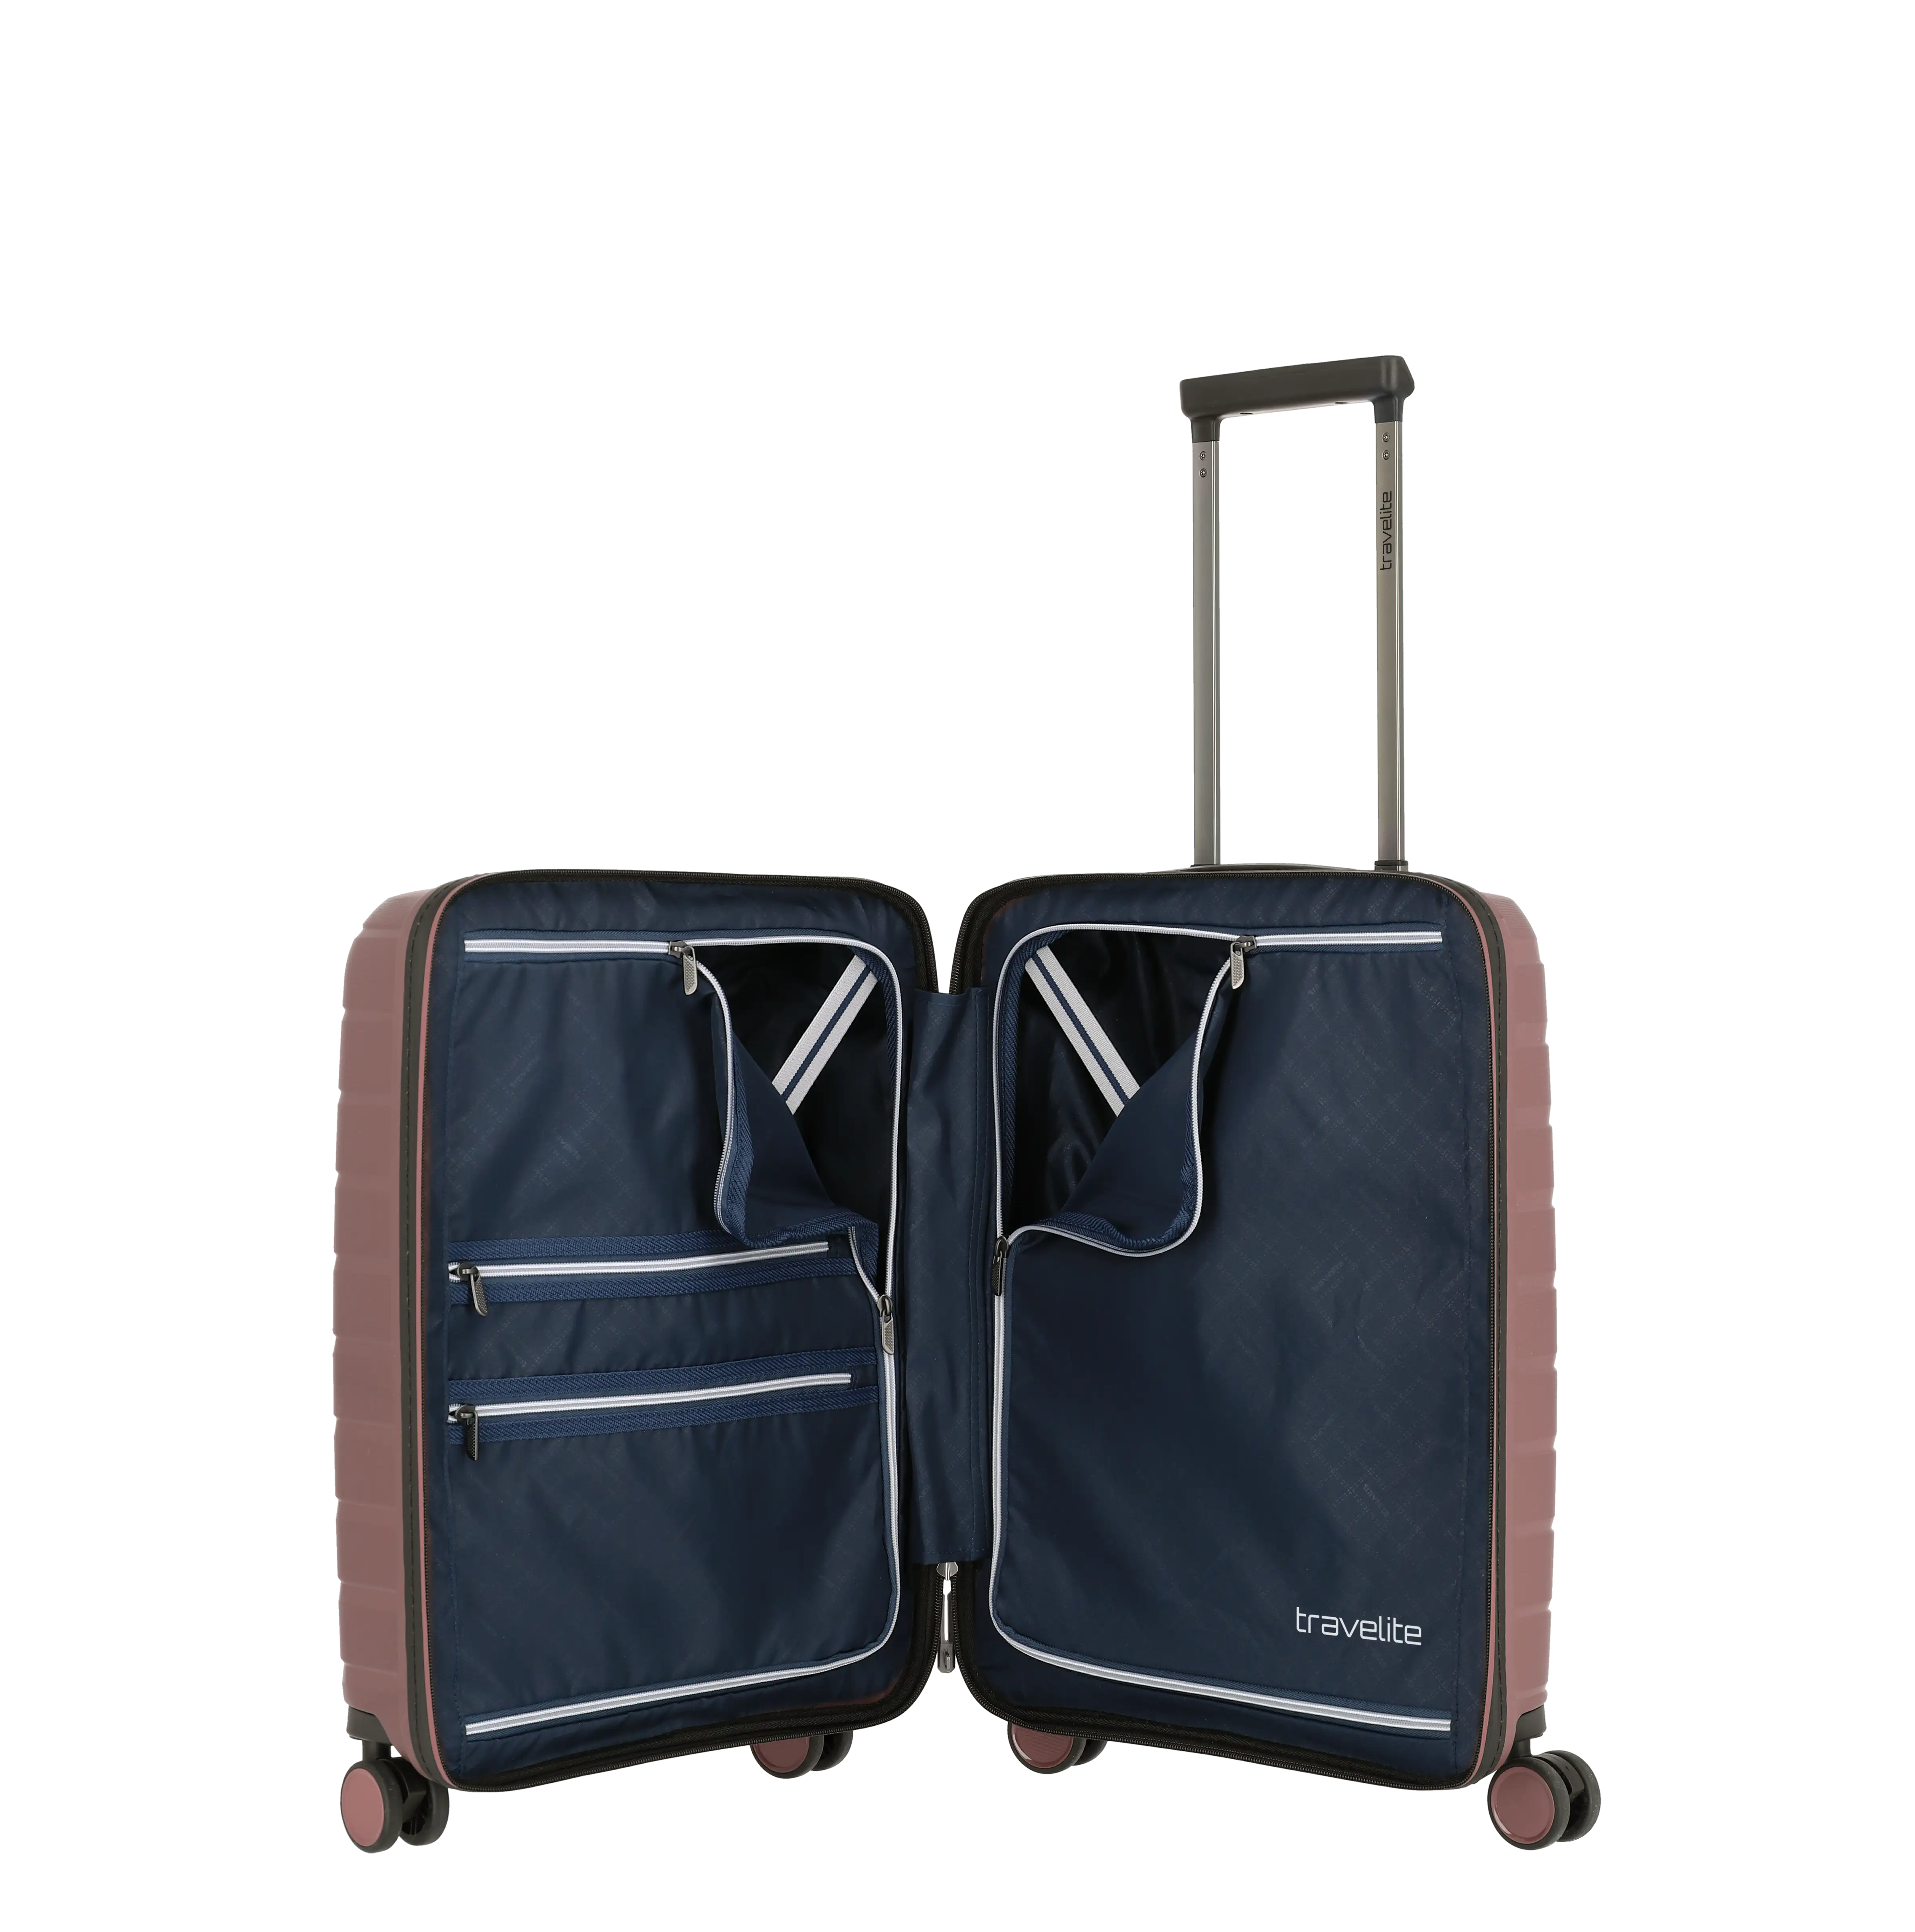 travelite AirBase Koffer in Flieder von innen Größe S+